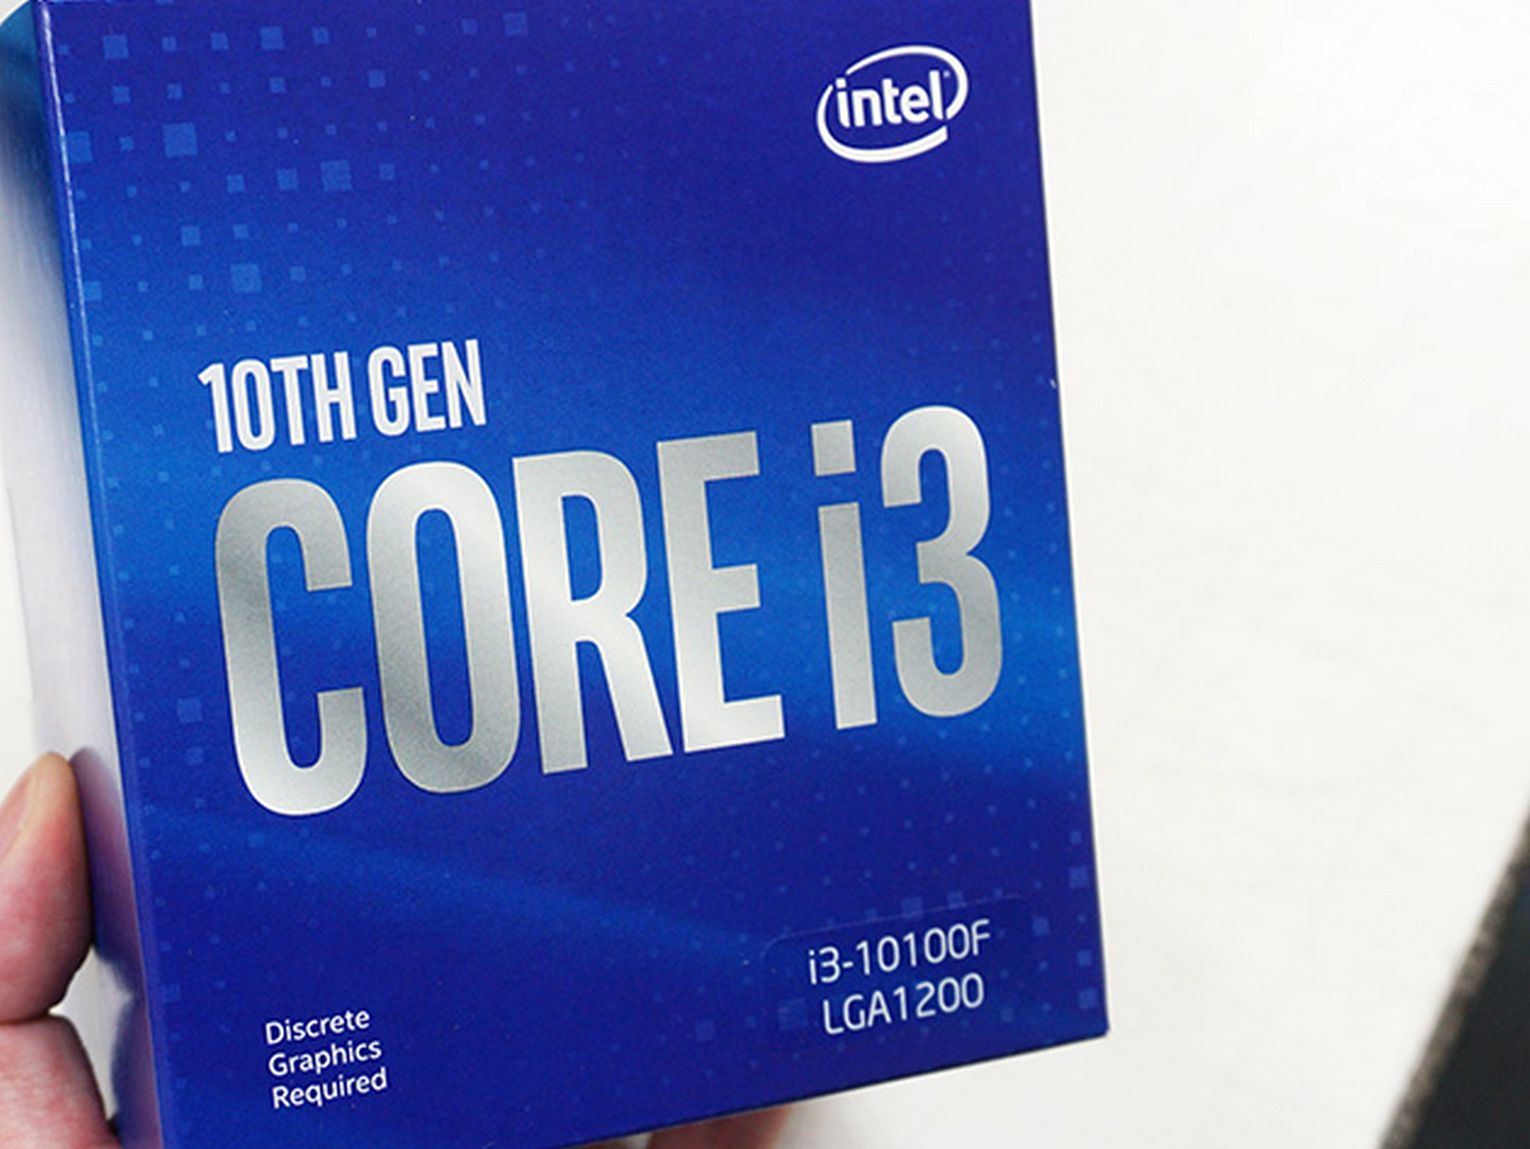 Интел 10100f. Intel Core i3-10100f. Процессор Intel Core i3-10100f OEM. Процессор Intel Core i3-10100f Box. Процессор Intel Core i3 10100f, LGA 1200, Box.